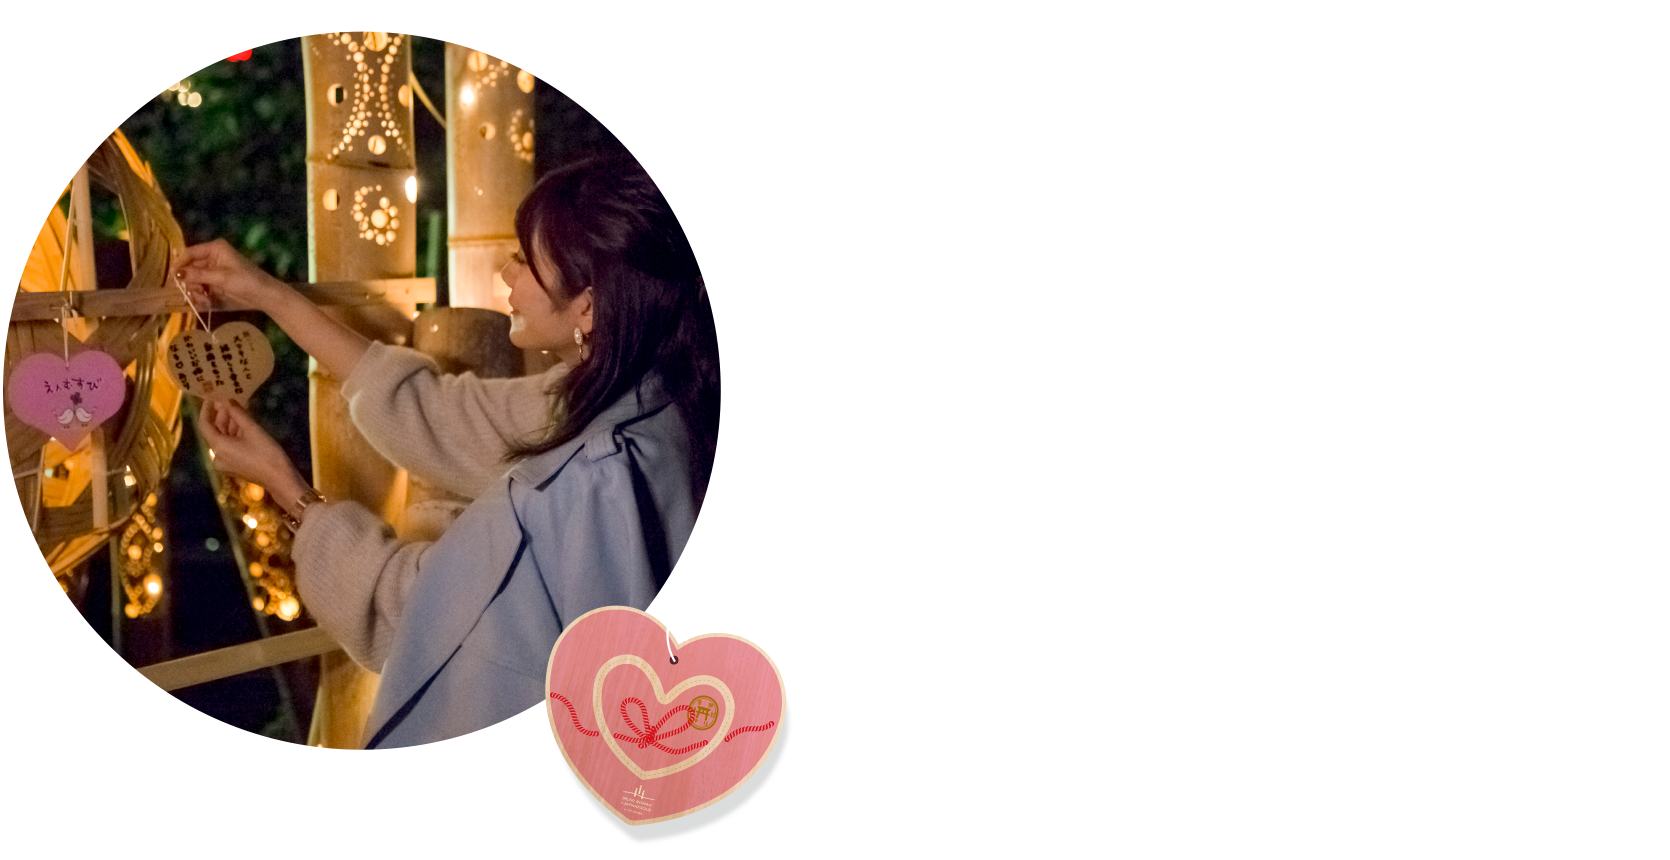 Write your entreaty on a heart-shaped ema